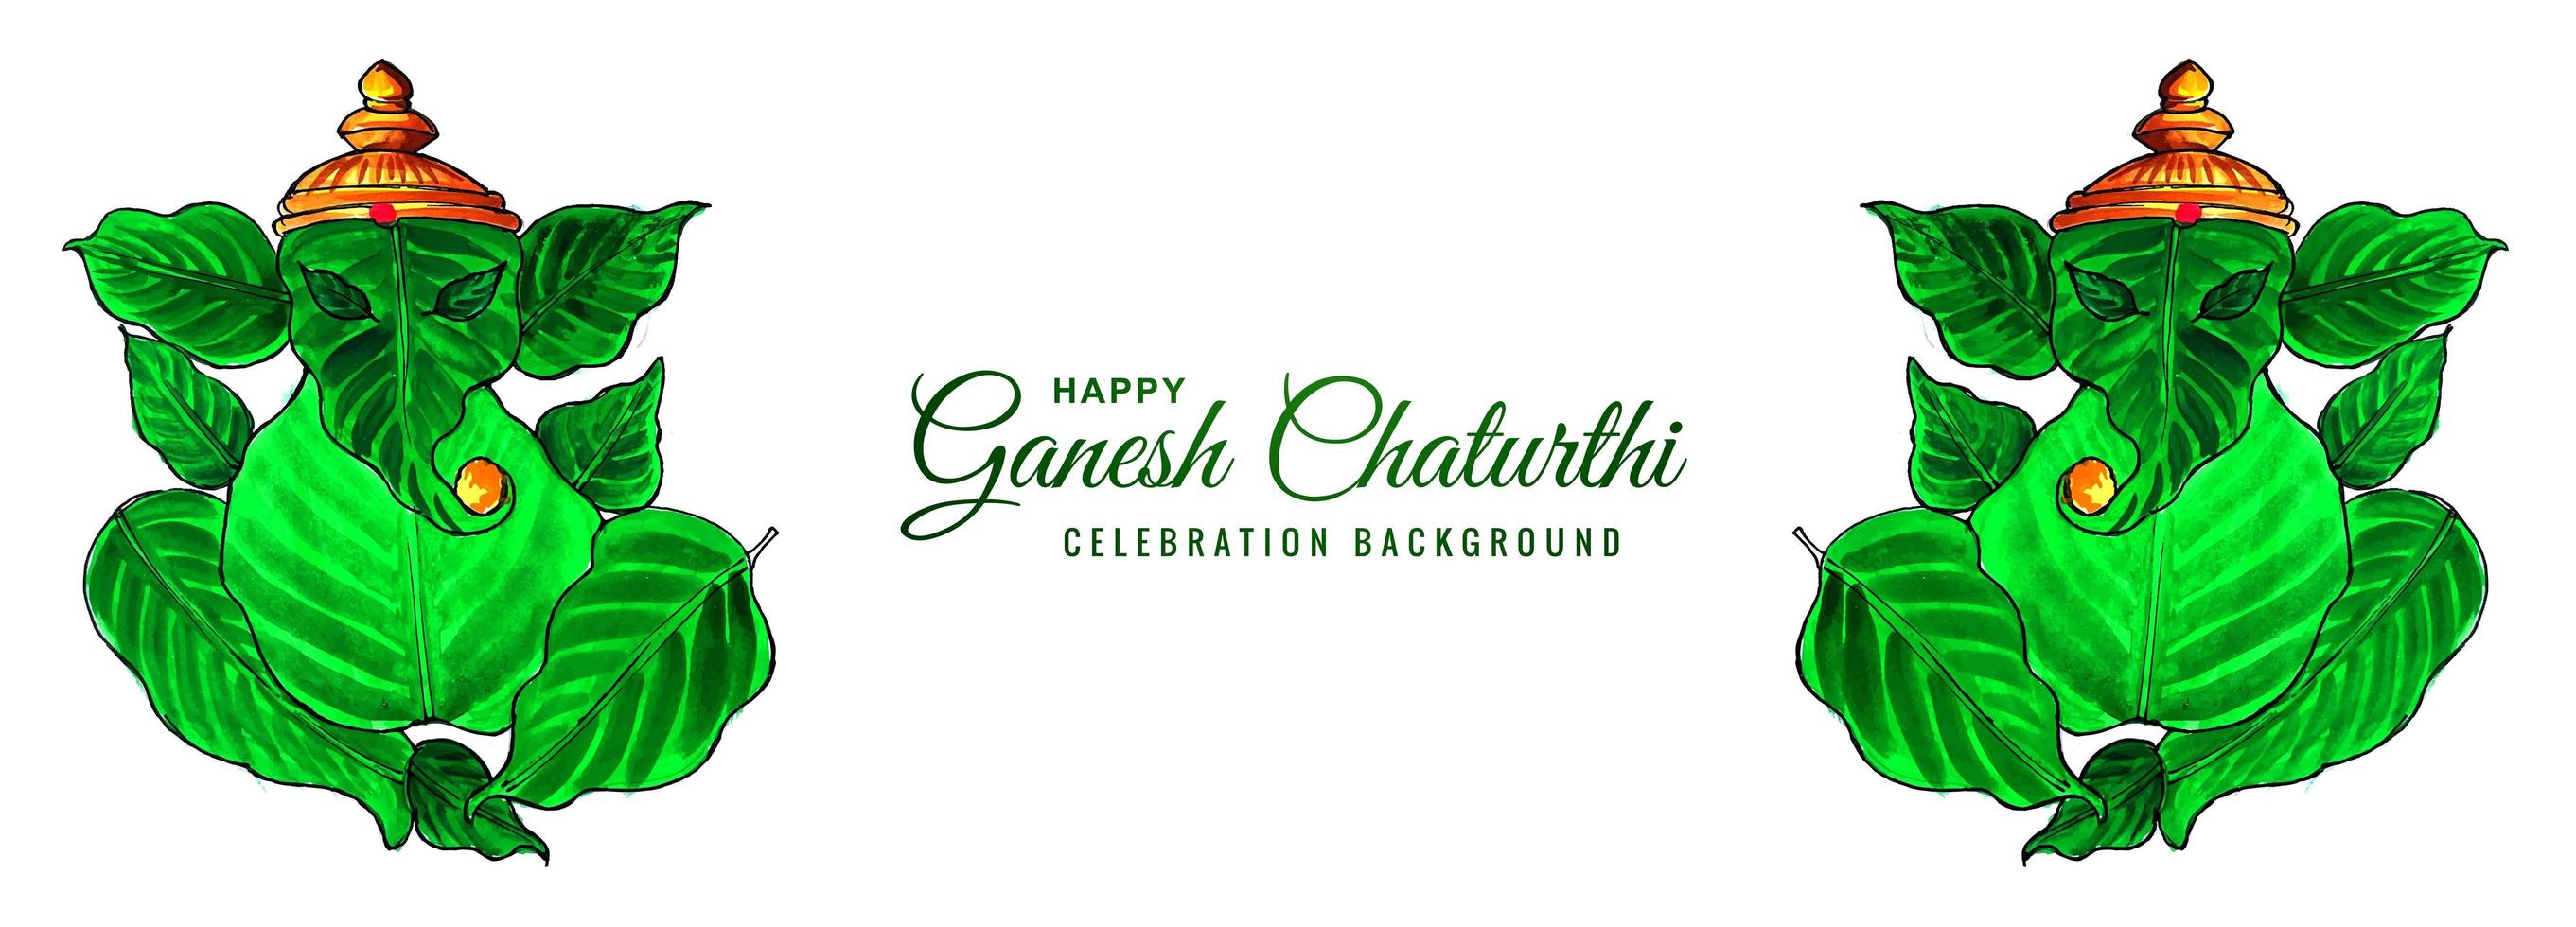 akvarell lämnar lord ganesh för ganesh chaturthi banner vektor